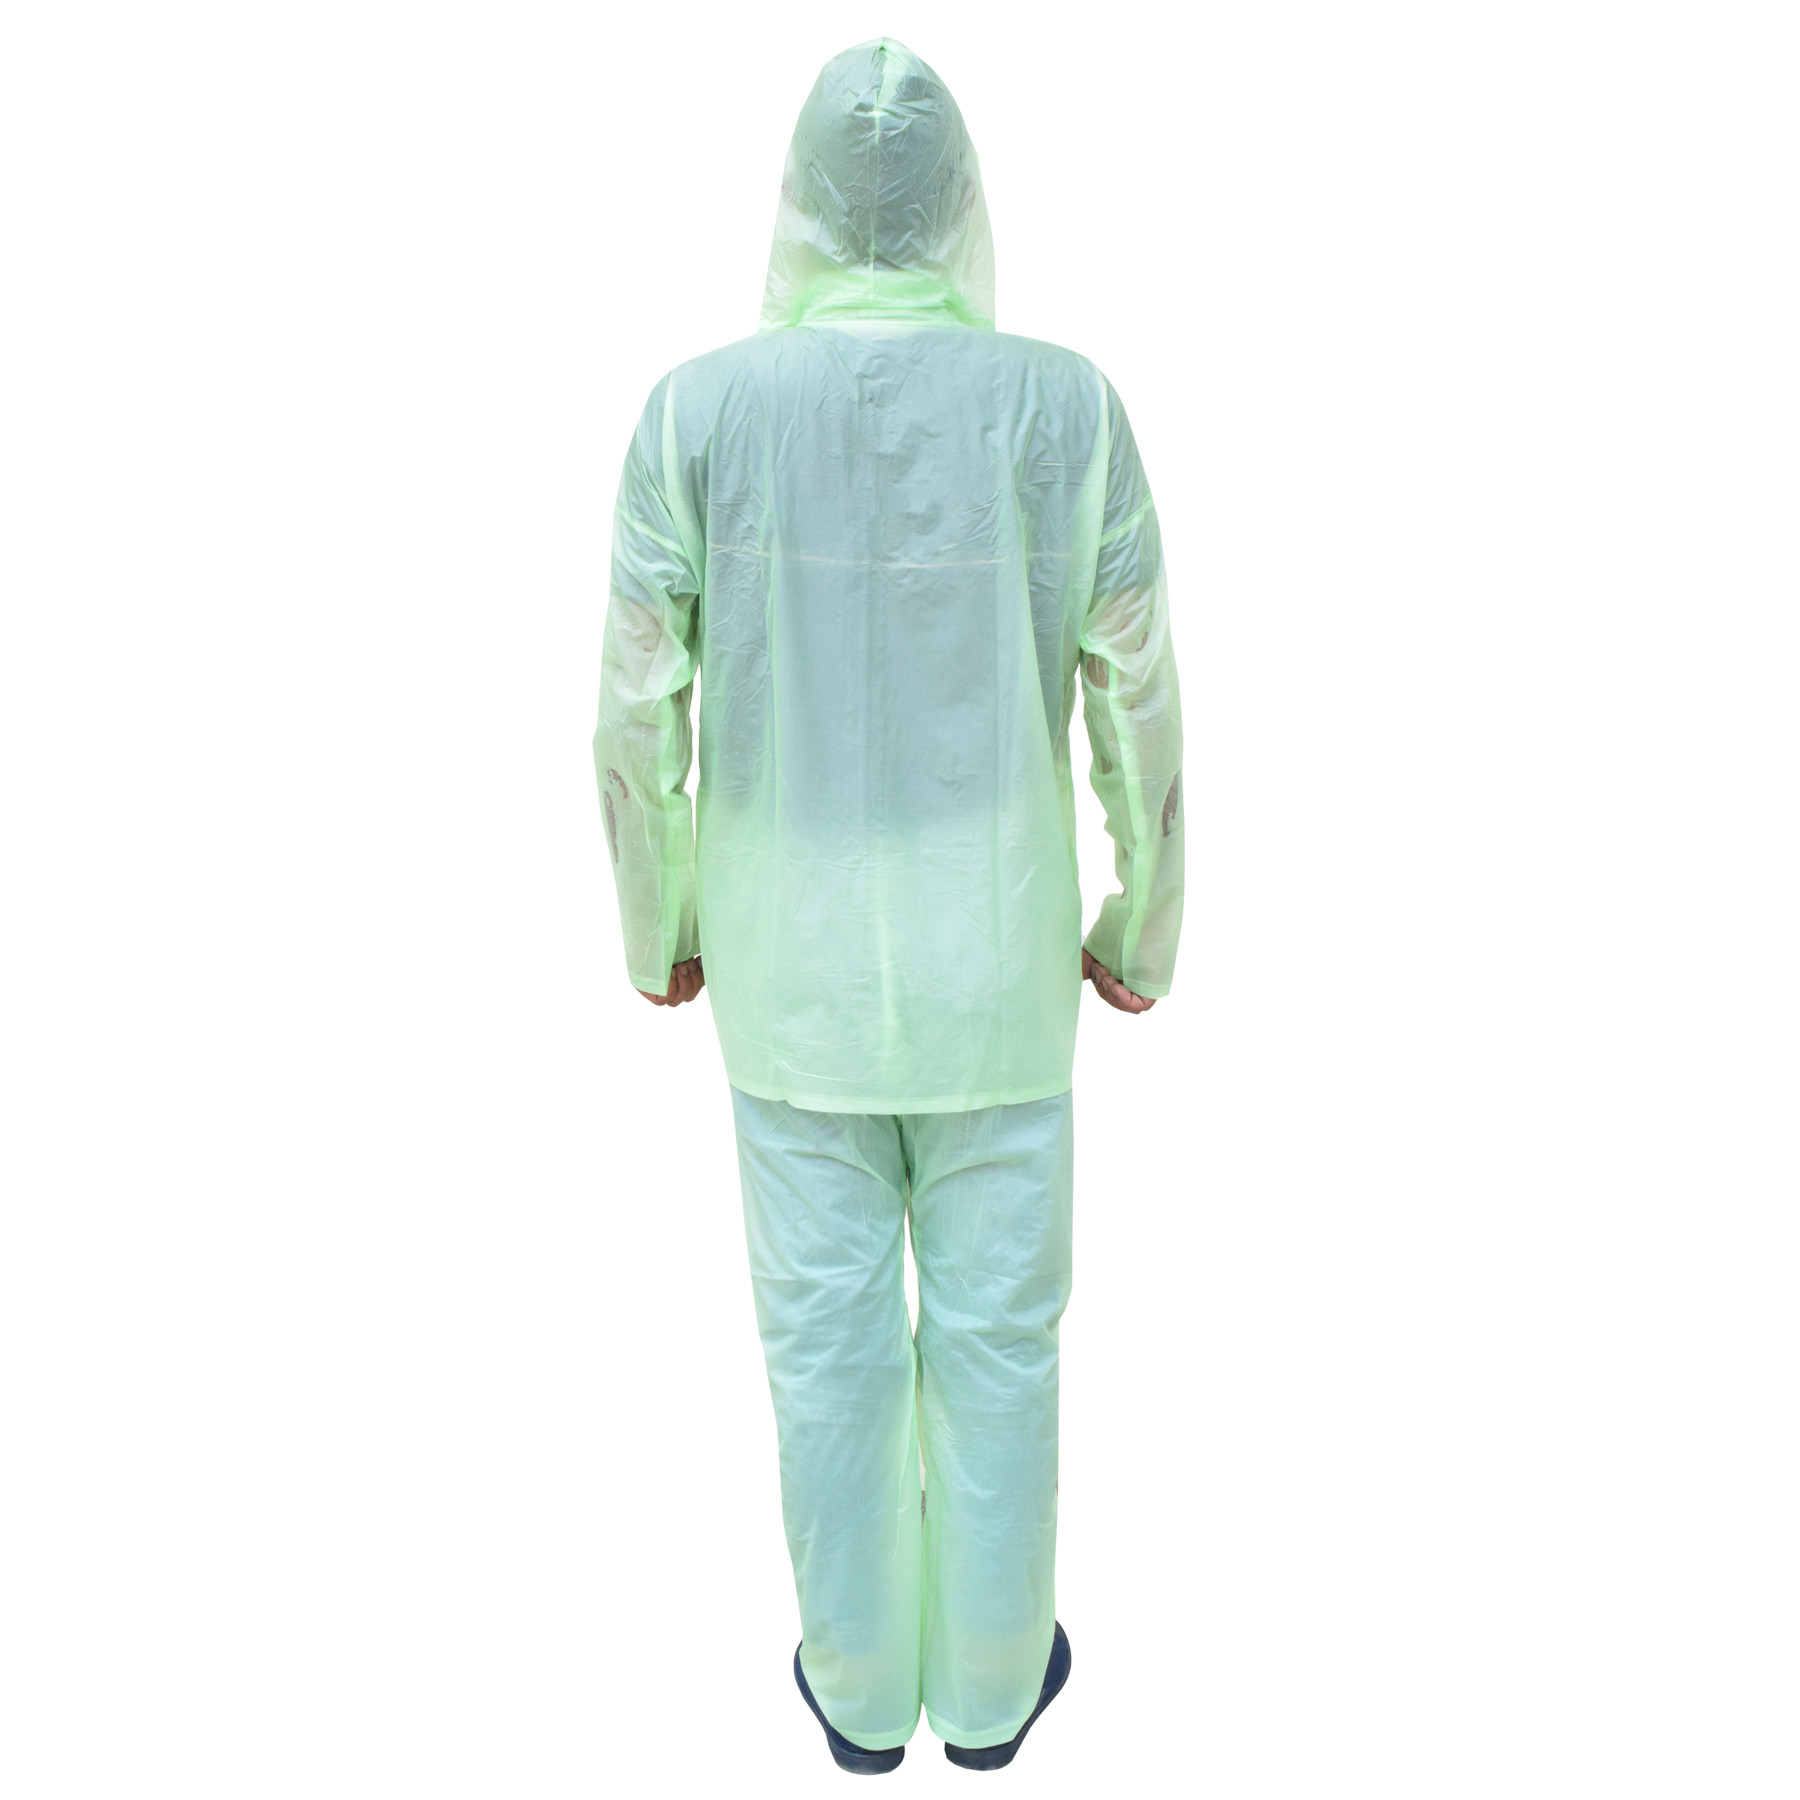 Kuber Industries PVC Raincoat With Adjustable Hood For Men & Women (Green) XXL